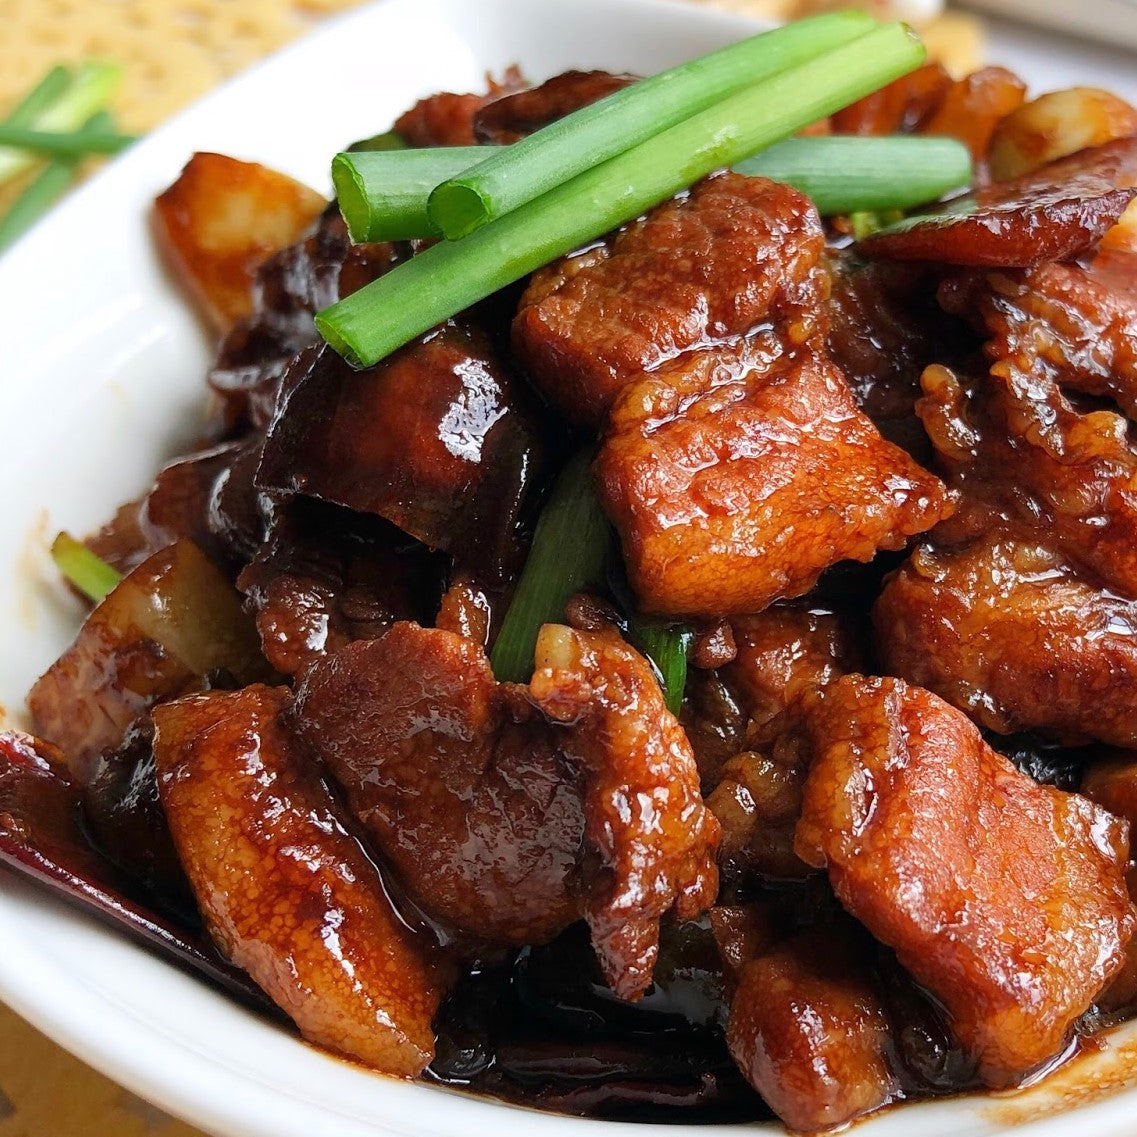 Maw M Claypot Spicy Pork Belly With Salted Fish 咸鱼花腩煲 400g± – Tasty ...